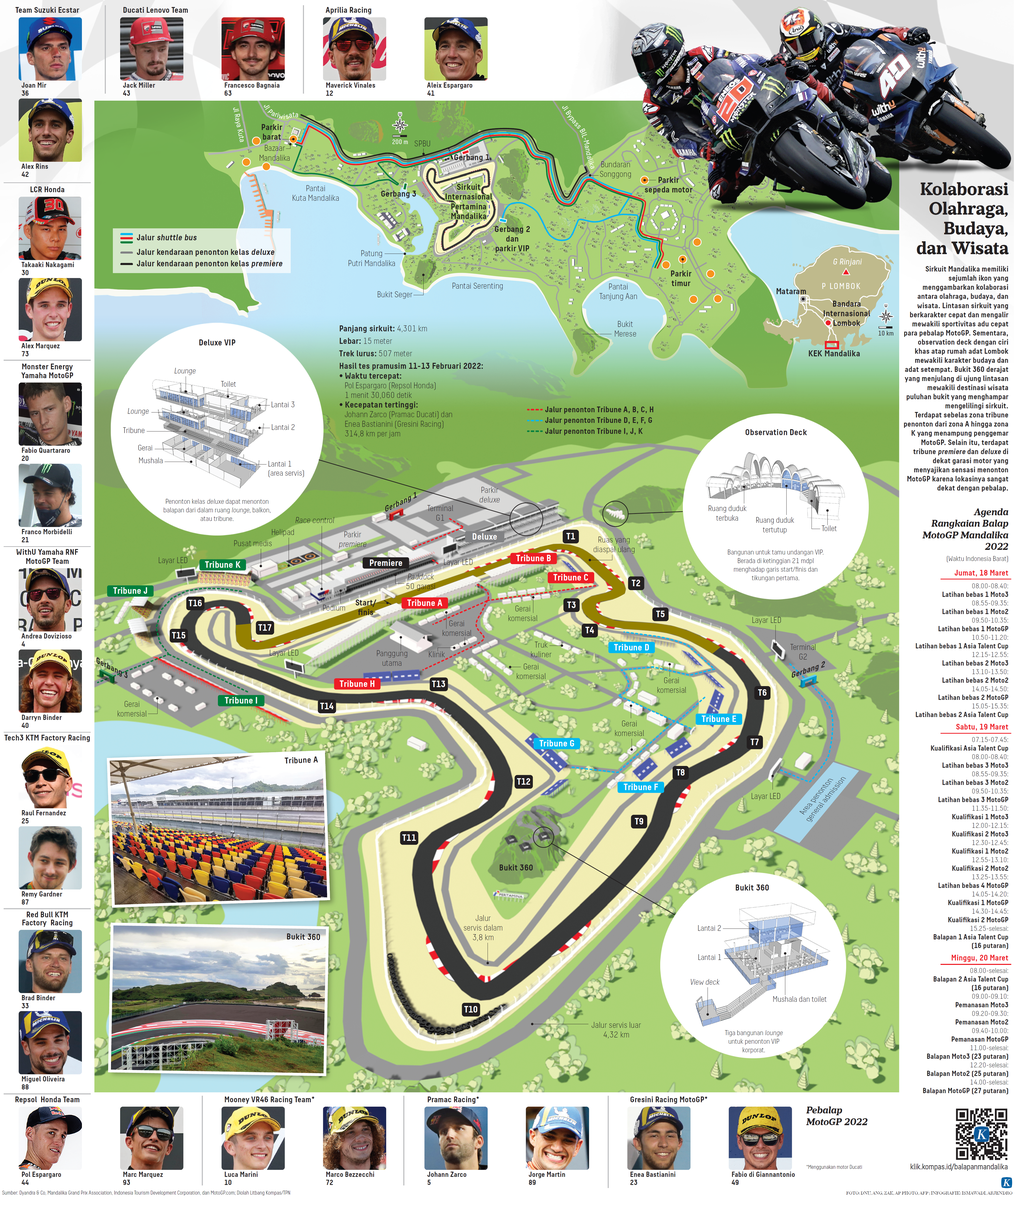 Profil Sirkuit Mandalika dan Event MotoGP Mandalika. Sumber: Harian Kompas, 16 Maret 2022